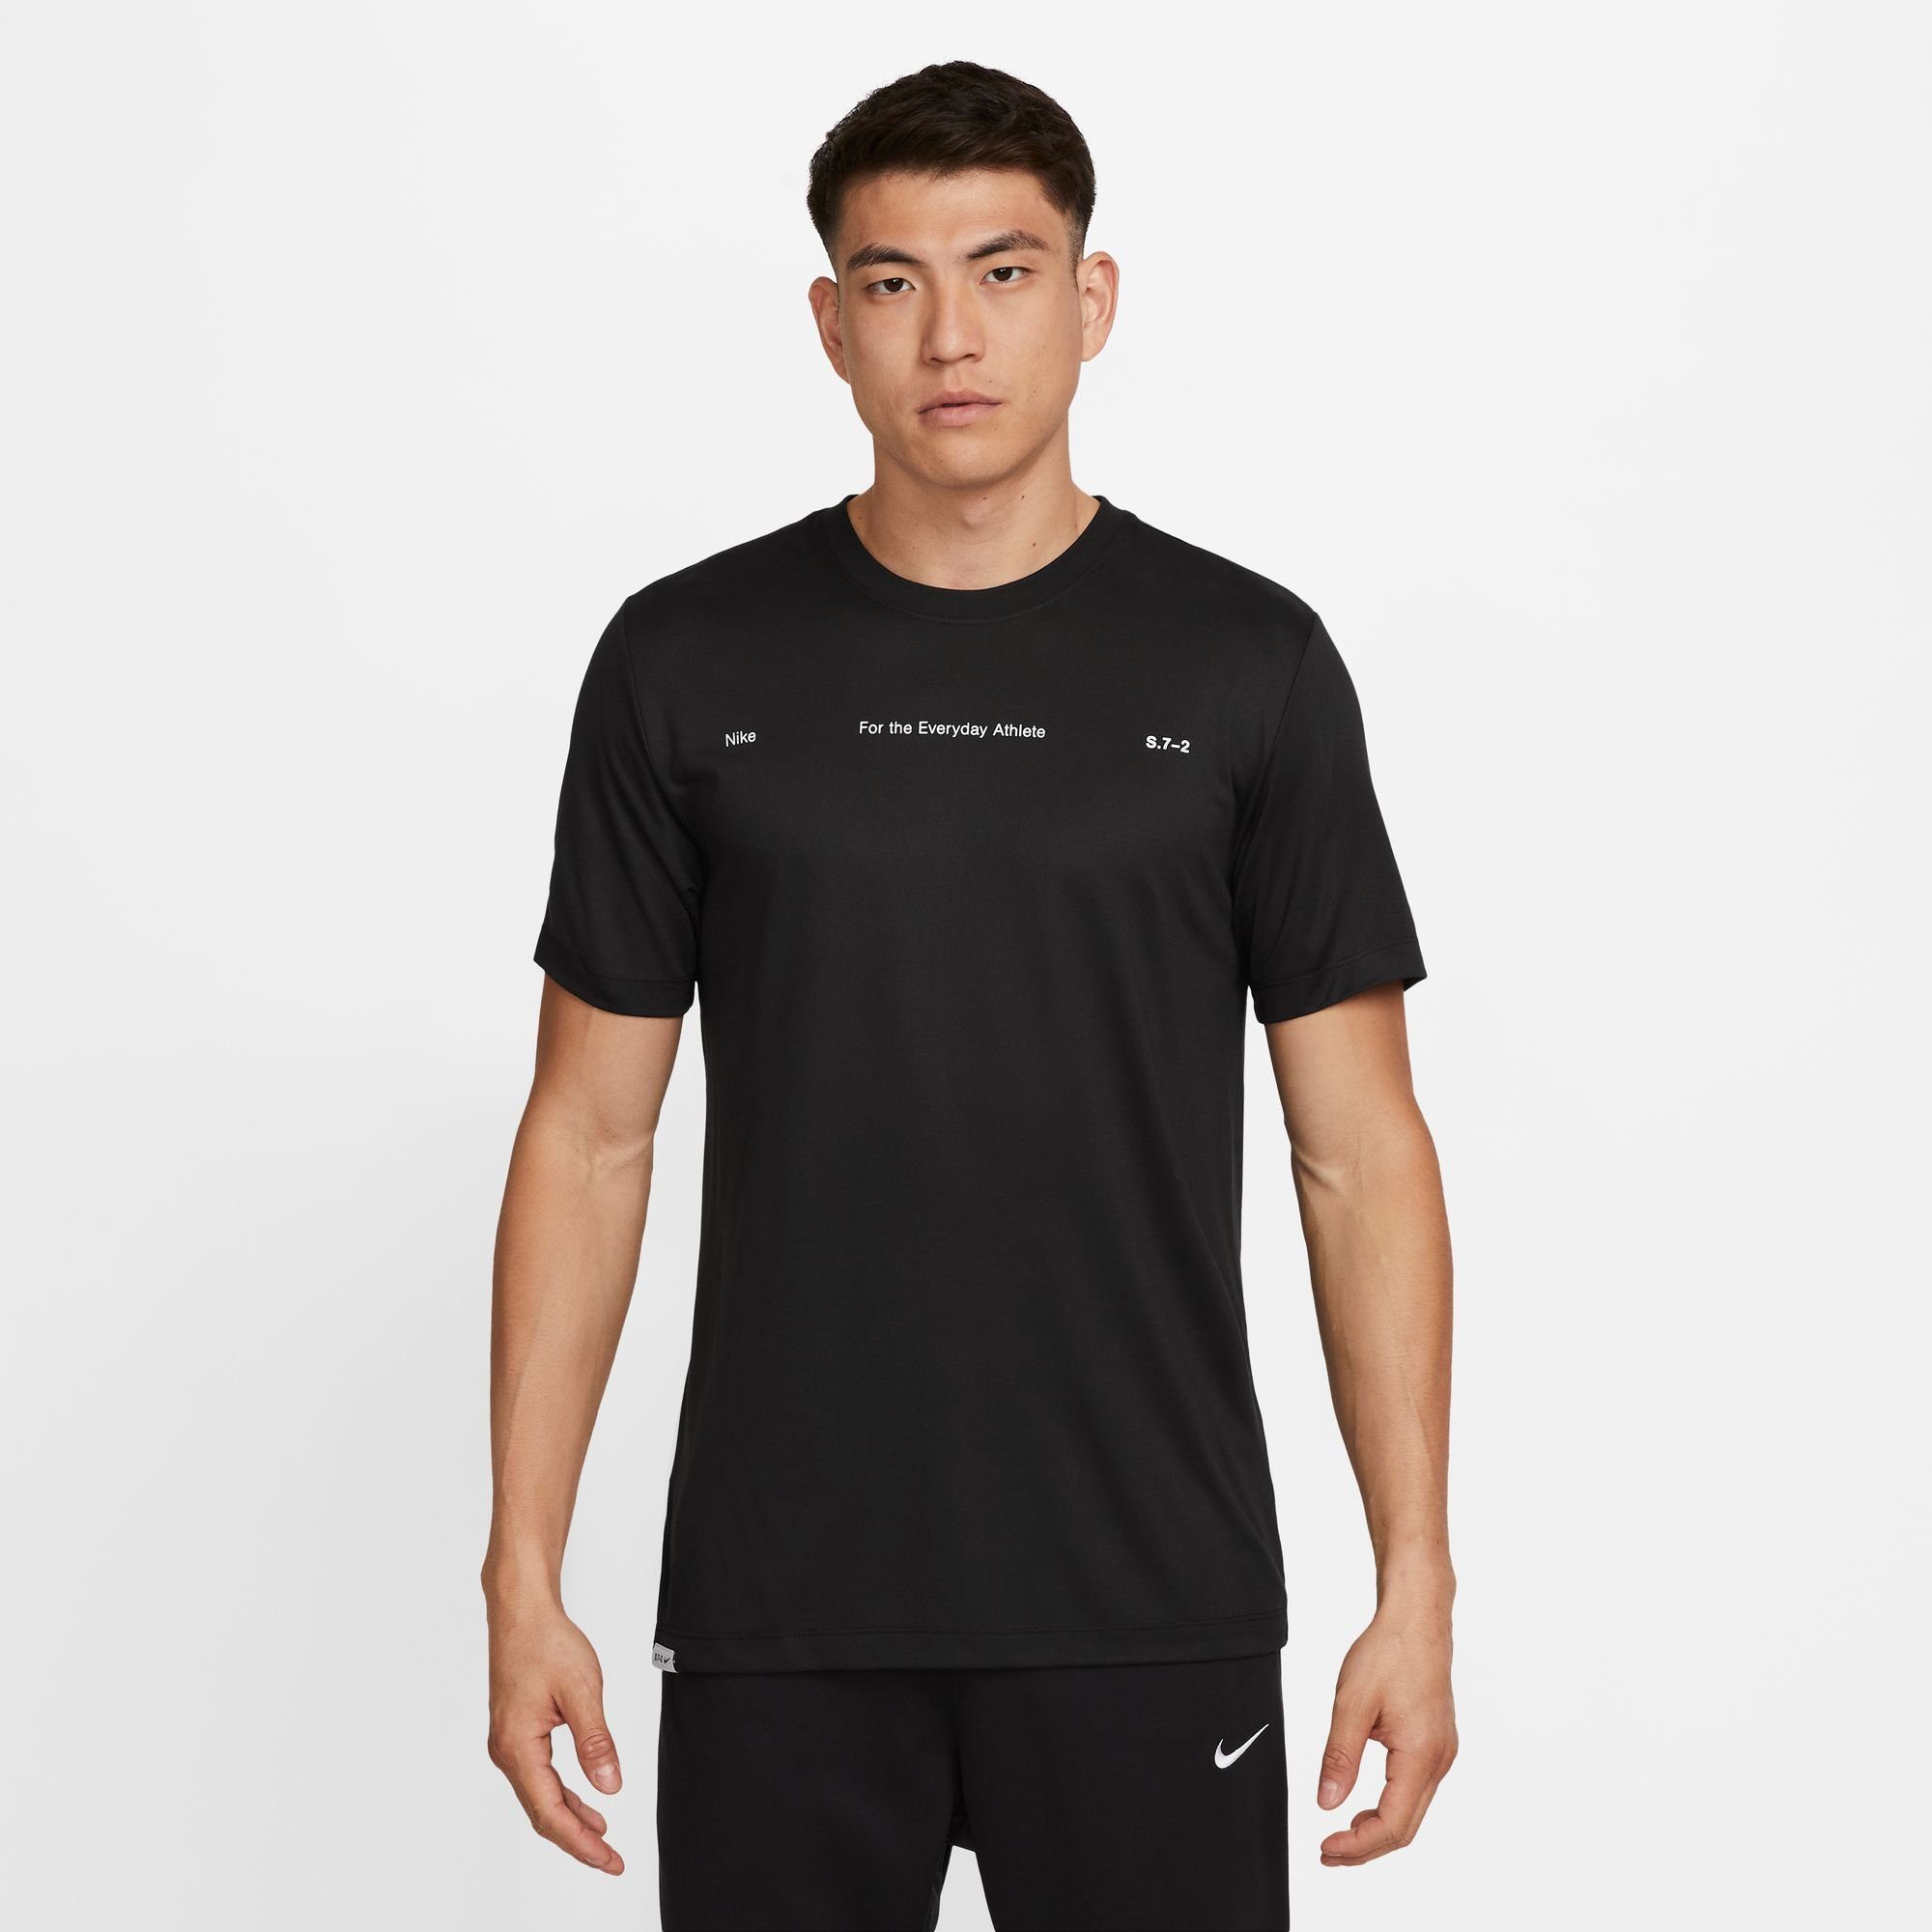 BLACK Trainingsshirt MEN'S FITNESS Nike DRI-FIT T-SHIRT